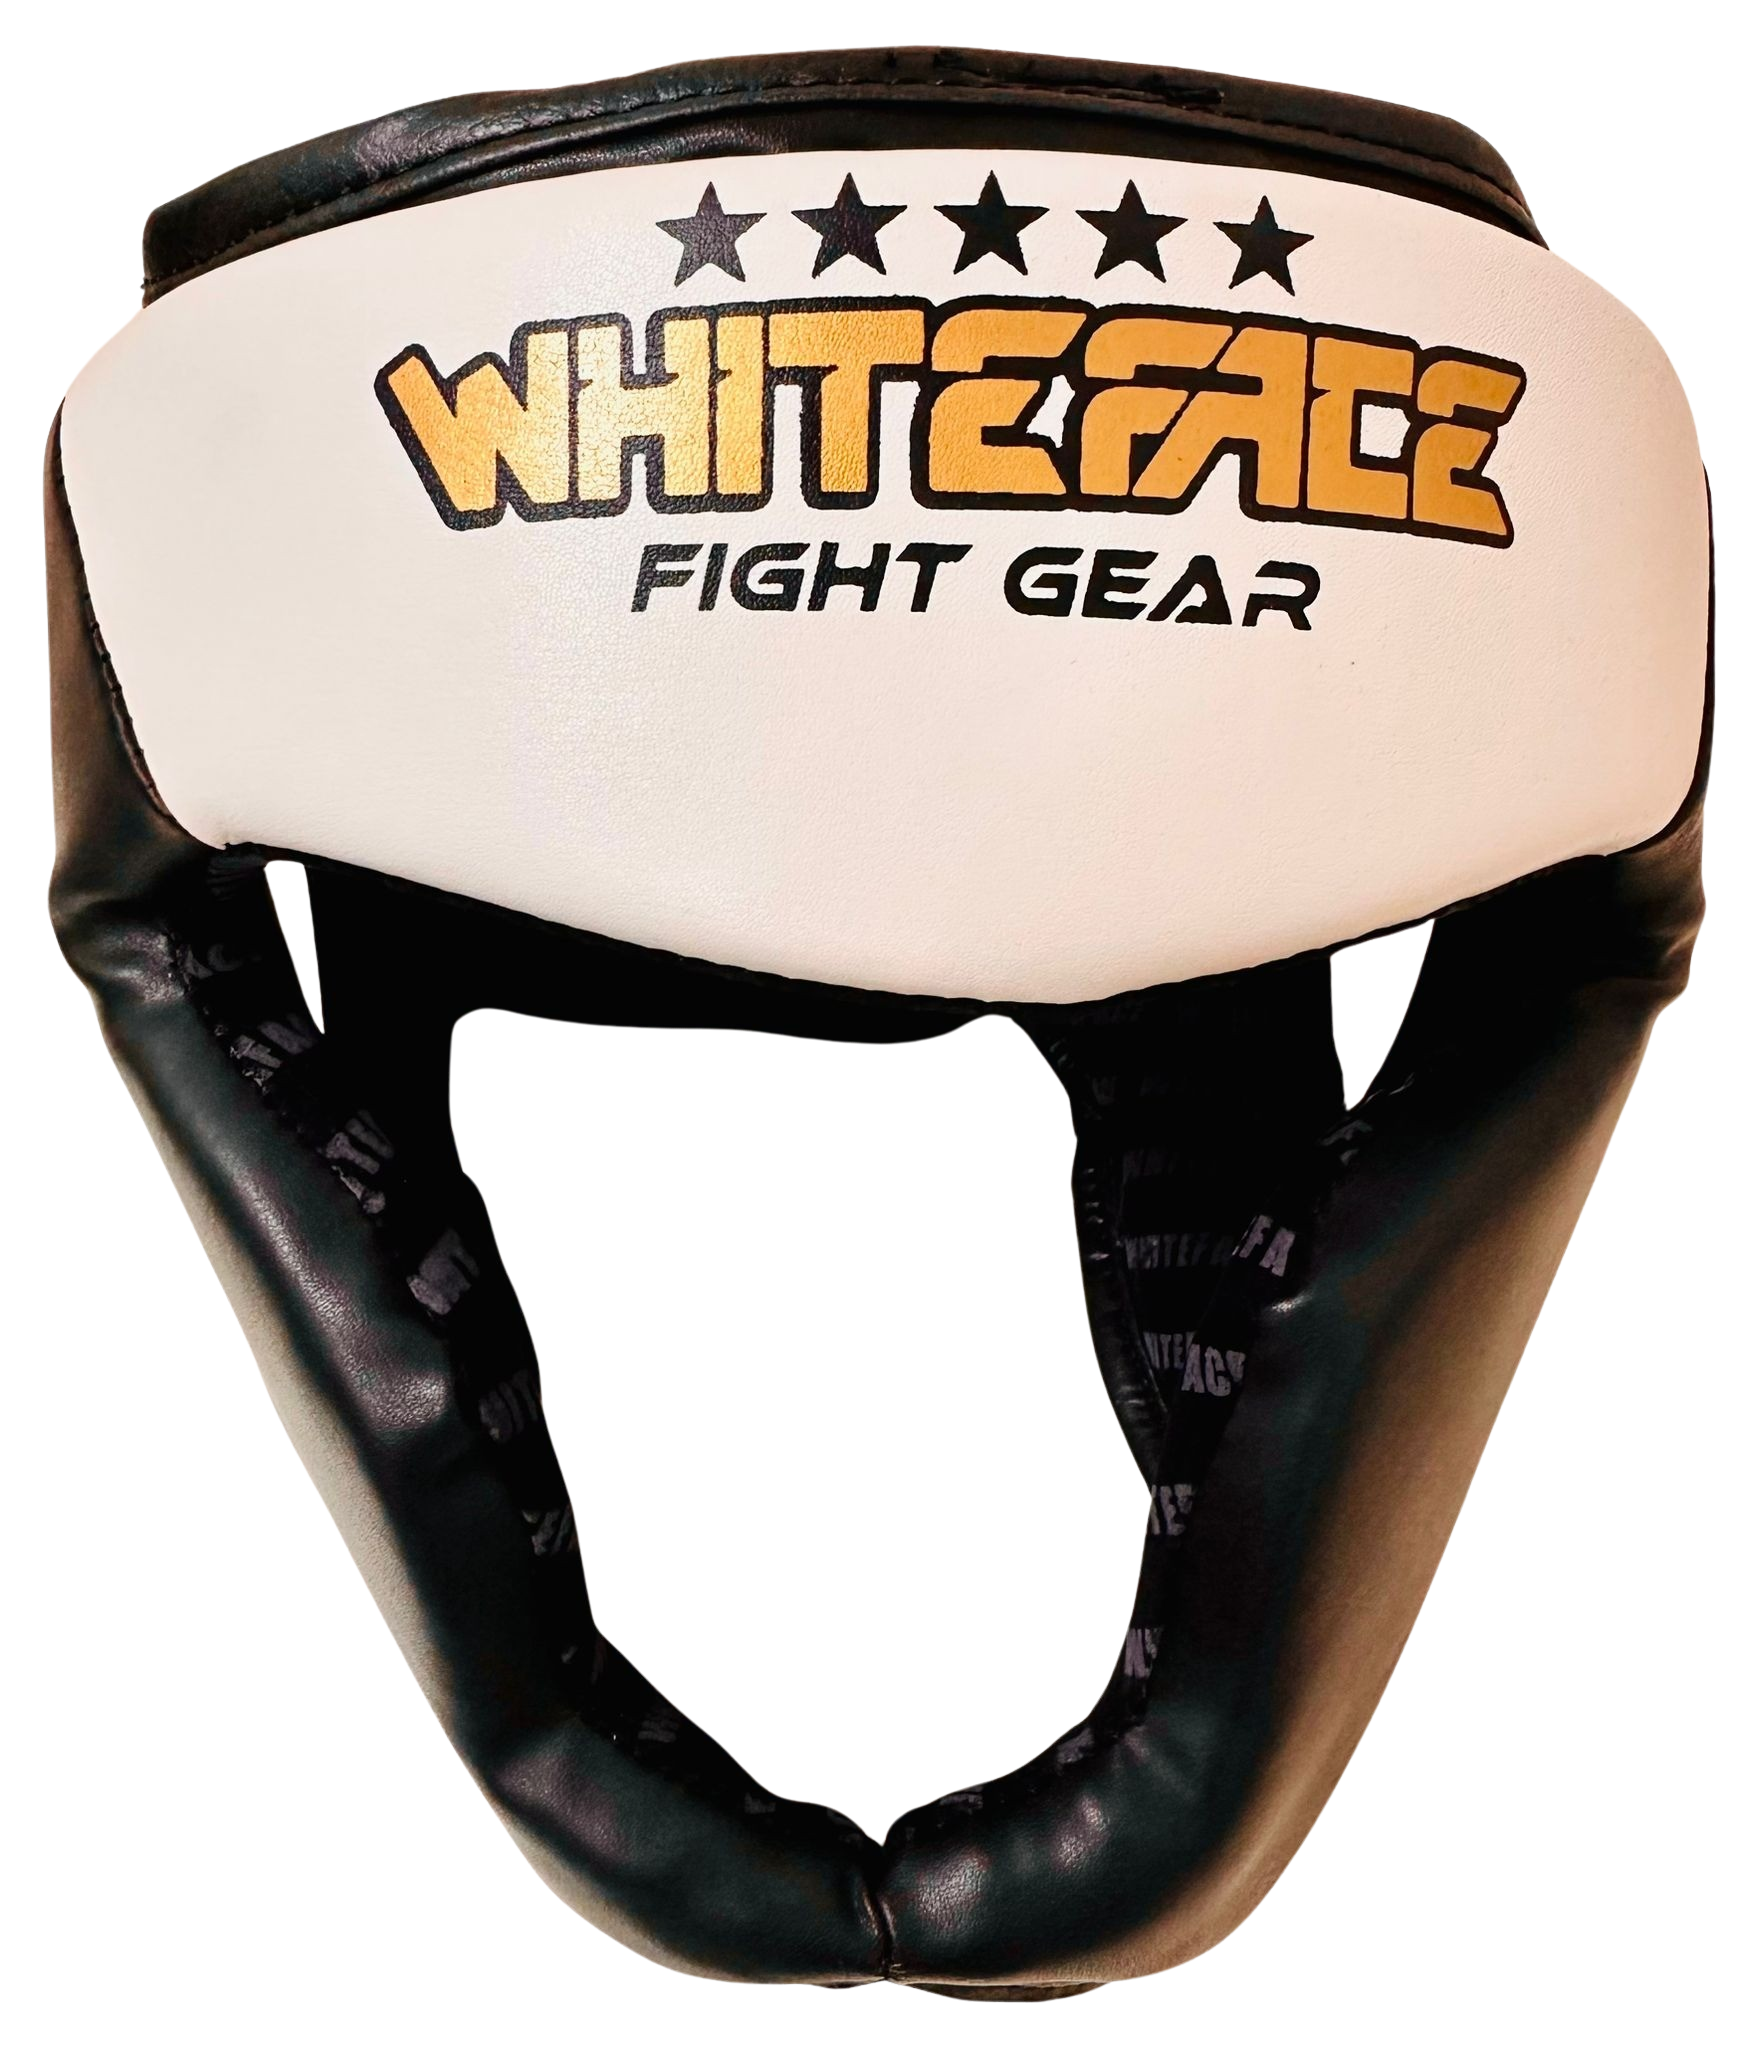 Whiteface Yanak ve Çene Korumalı Boks Kaskı/Muay Thai/Kick Boks Kask (BEYAZ)